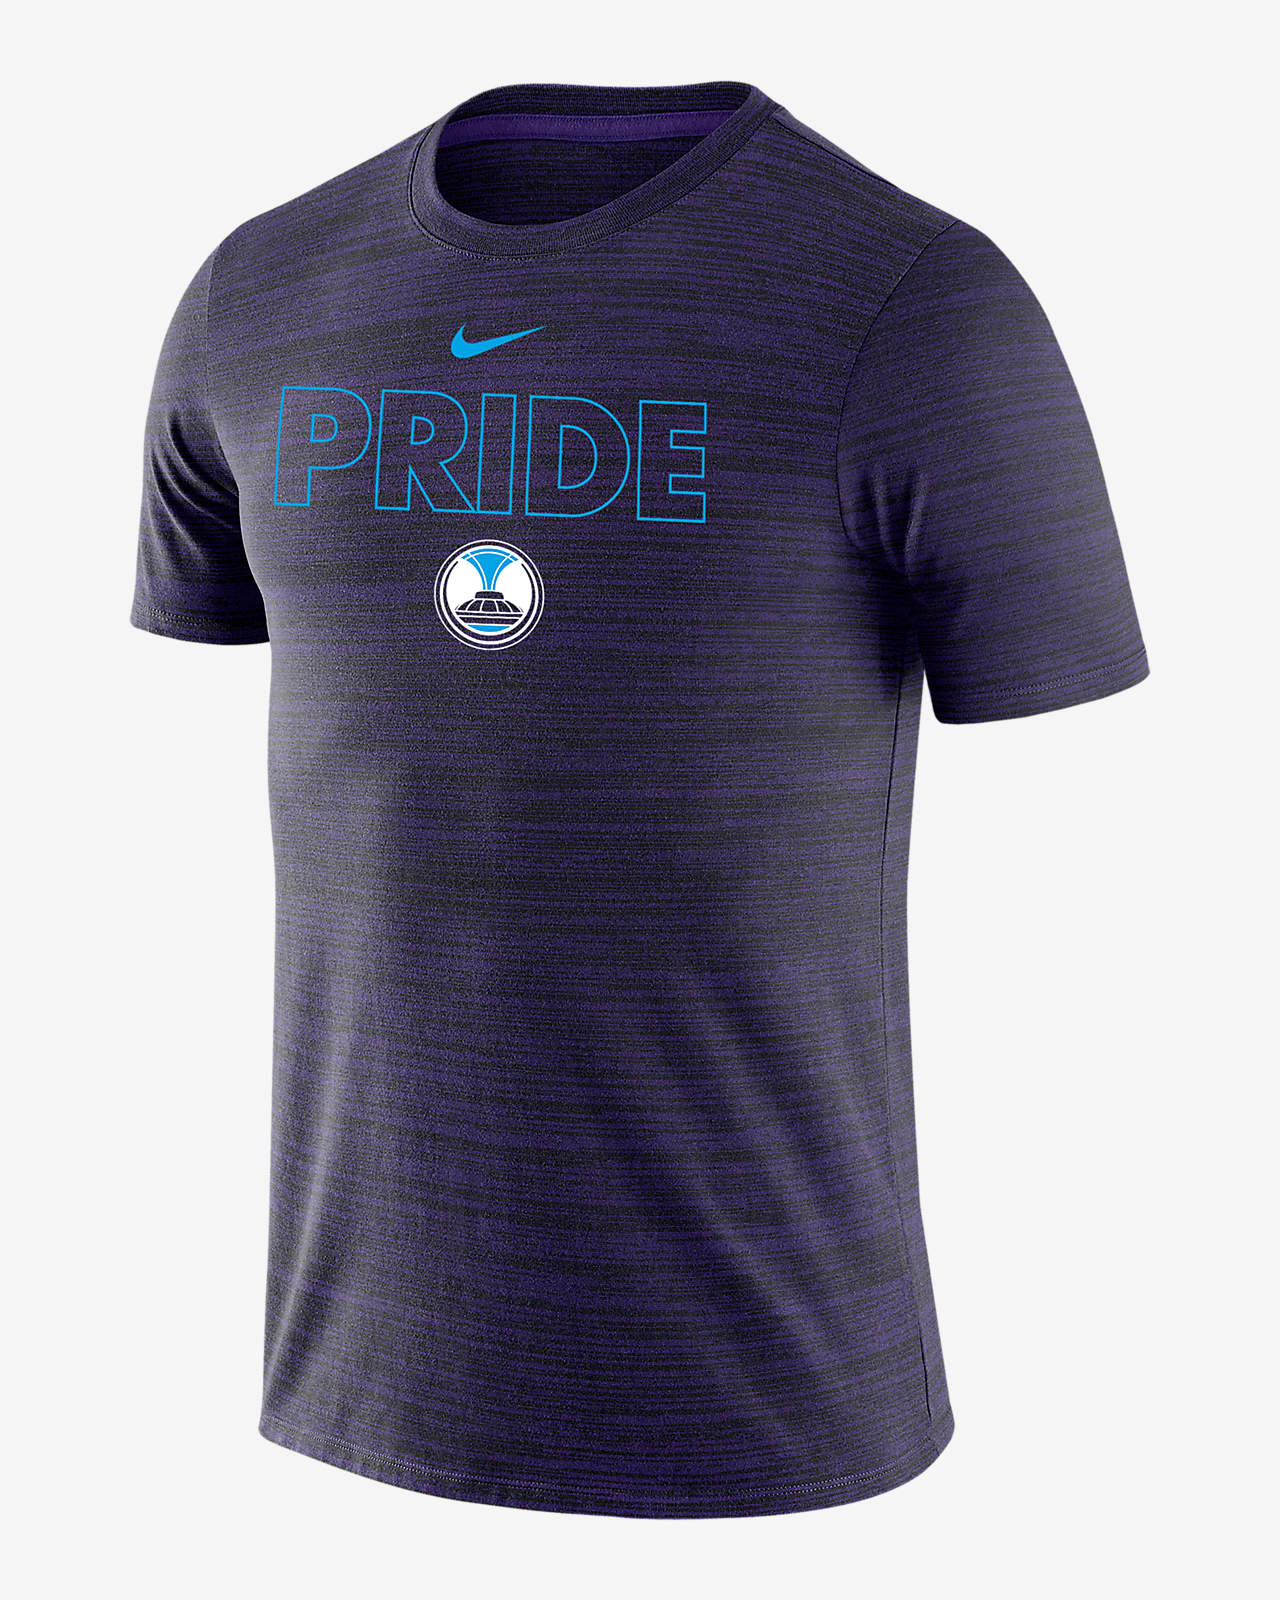 OL Reign Velocity Legend Men's Nike Soccer T-Shirt